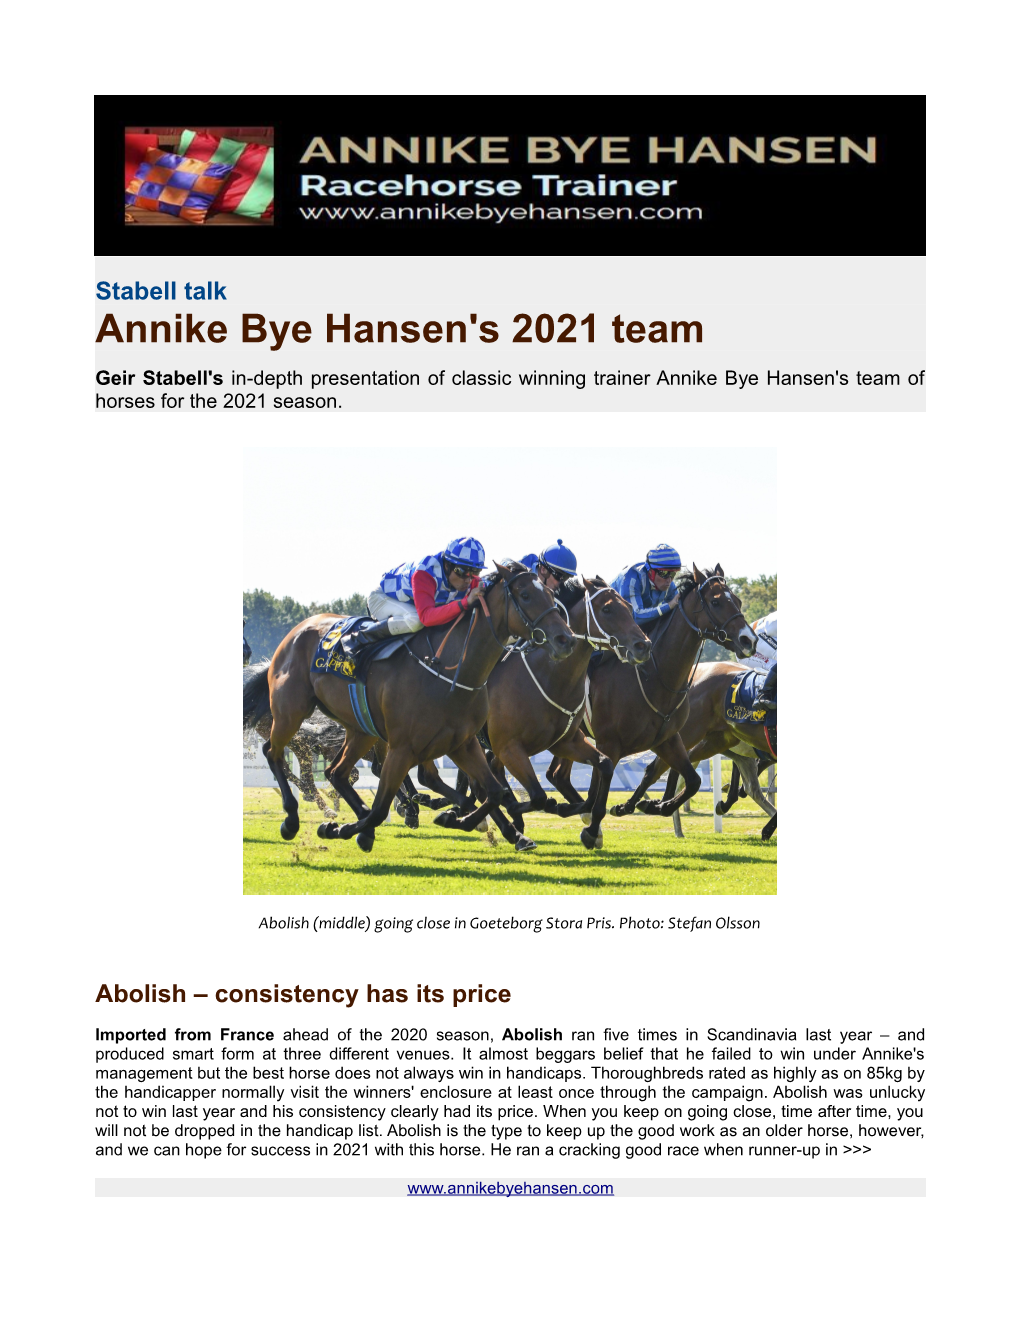 Annike Bye Hansen's 2021 Team Geir Stabell's In-Depth Presentation of Classic Winning Trainer Annike Bye Hansen's Team of Horses for the 2021 Season